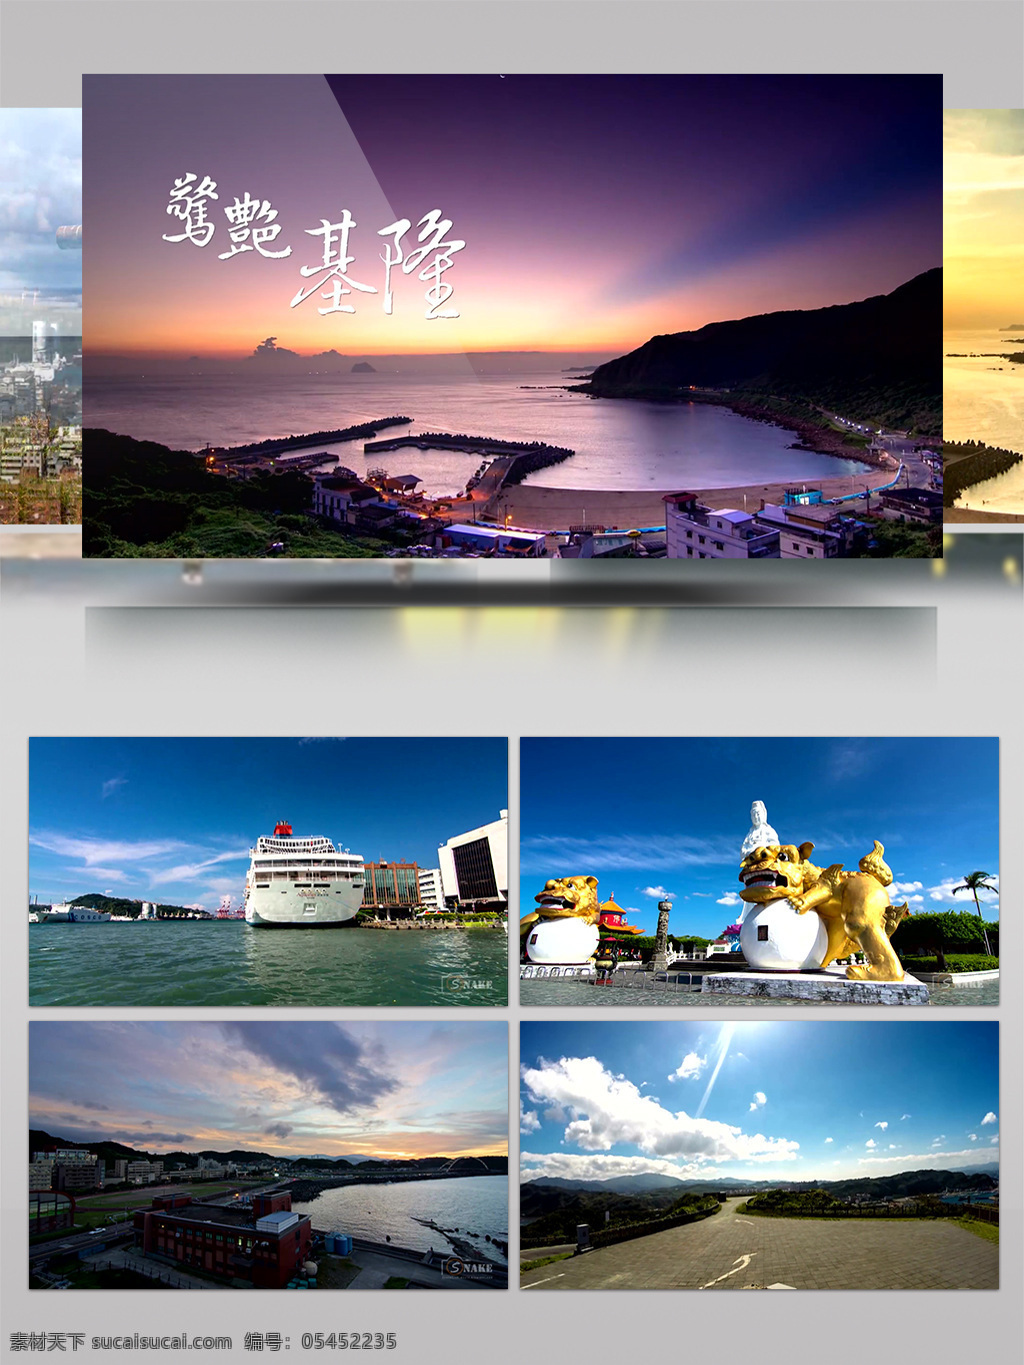 惊艳 台湾 基隆 之美 延时 旅游 宣传片 基隆风光 城市风景 建筑人文 自然风光